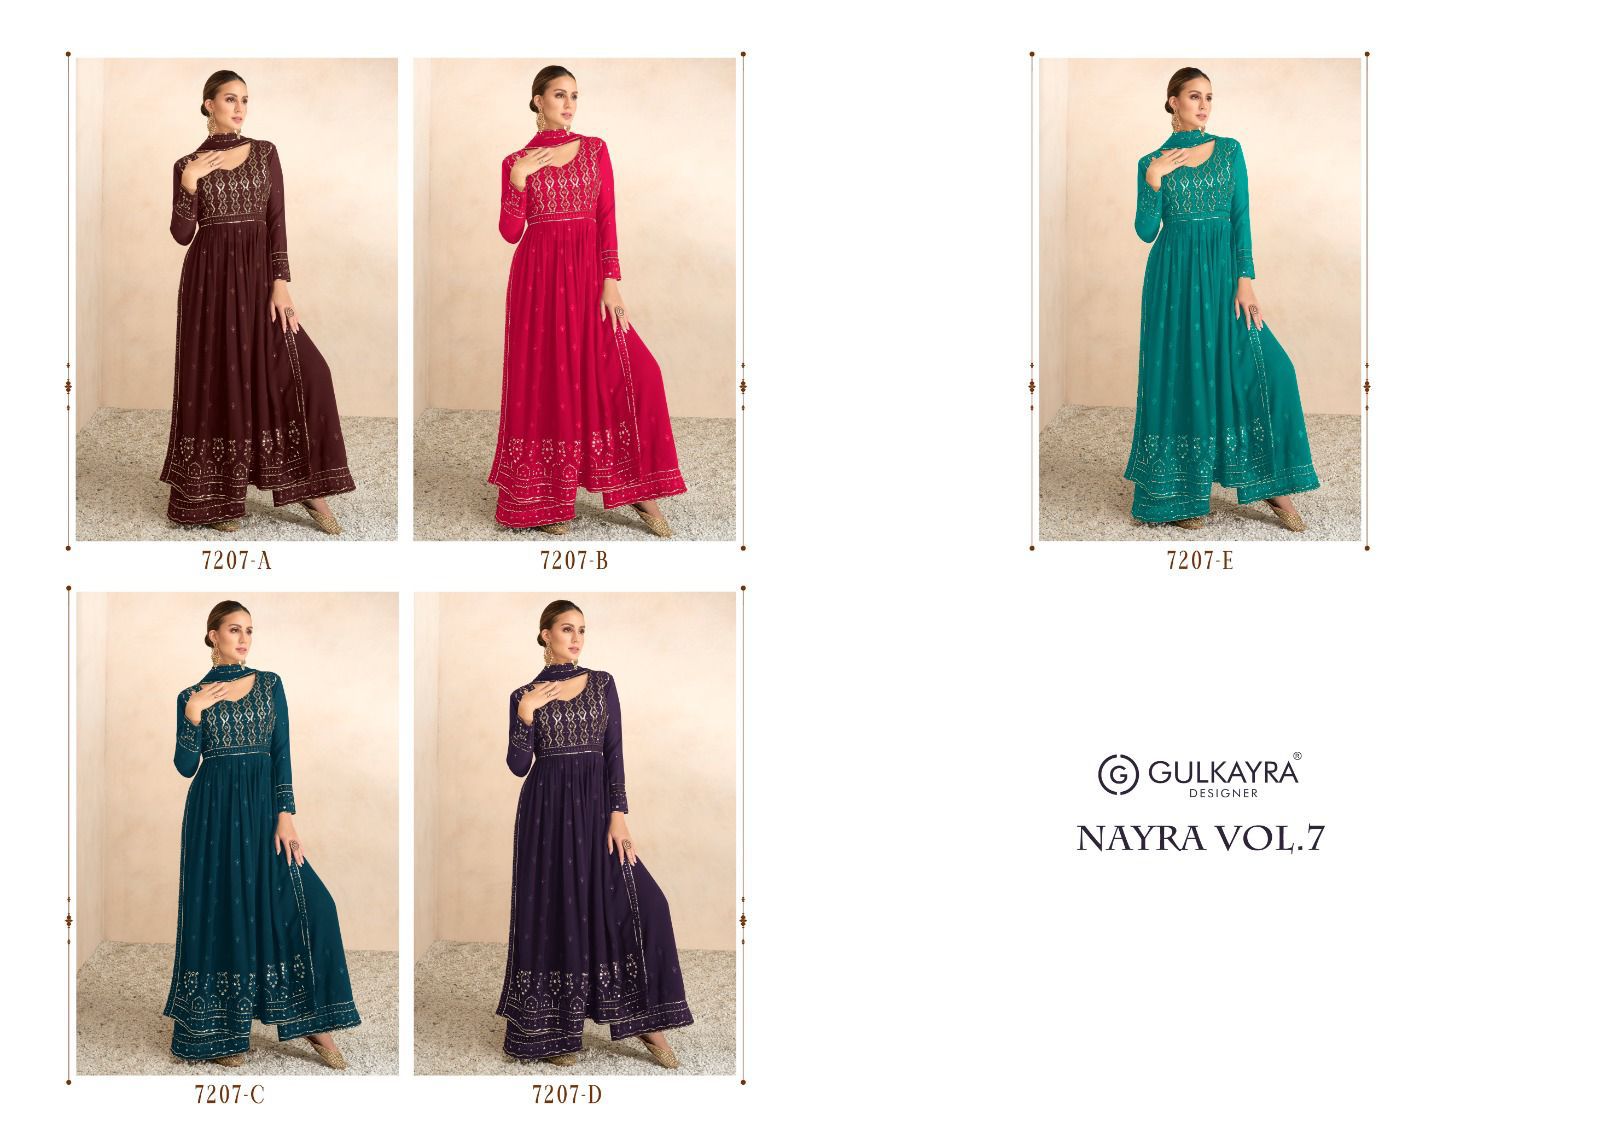 gulkayra designer nayra vol 7 blooming georgette elegant look salwar suit catalog